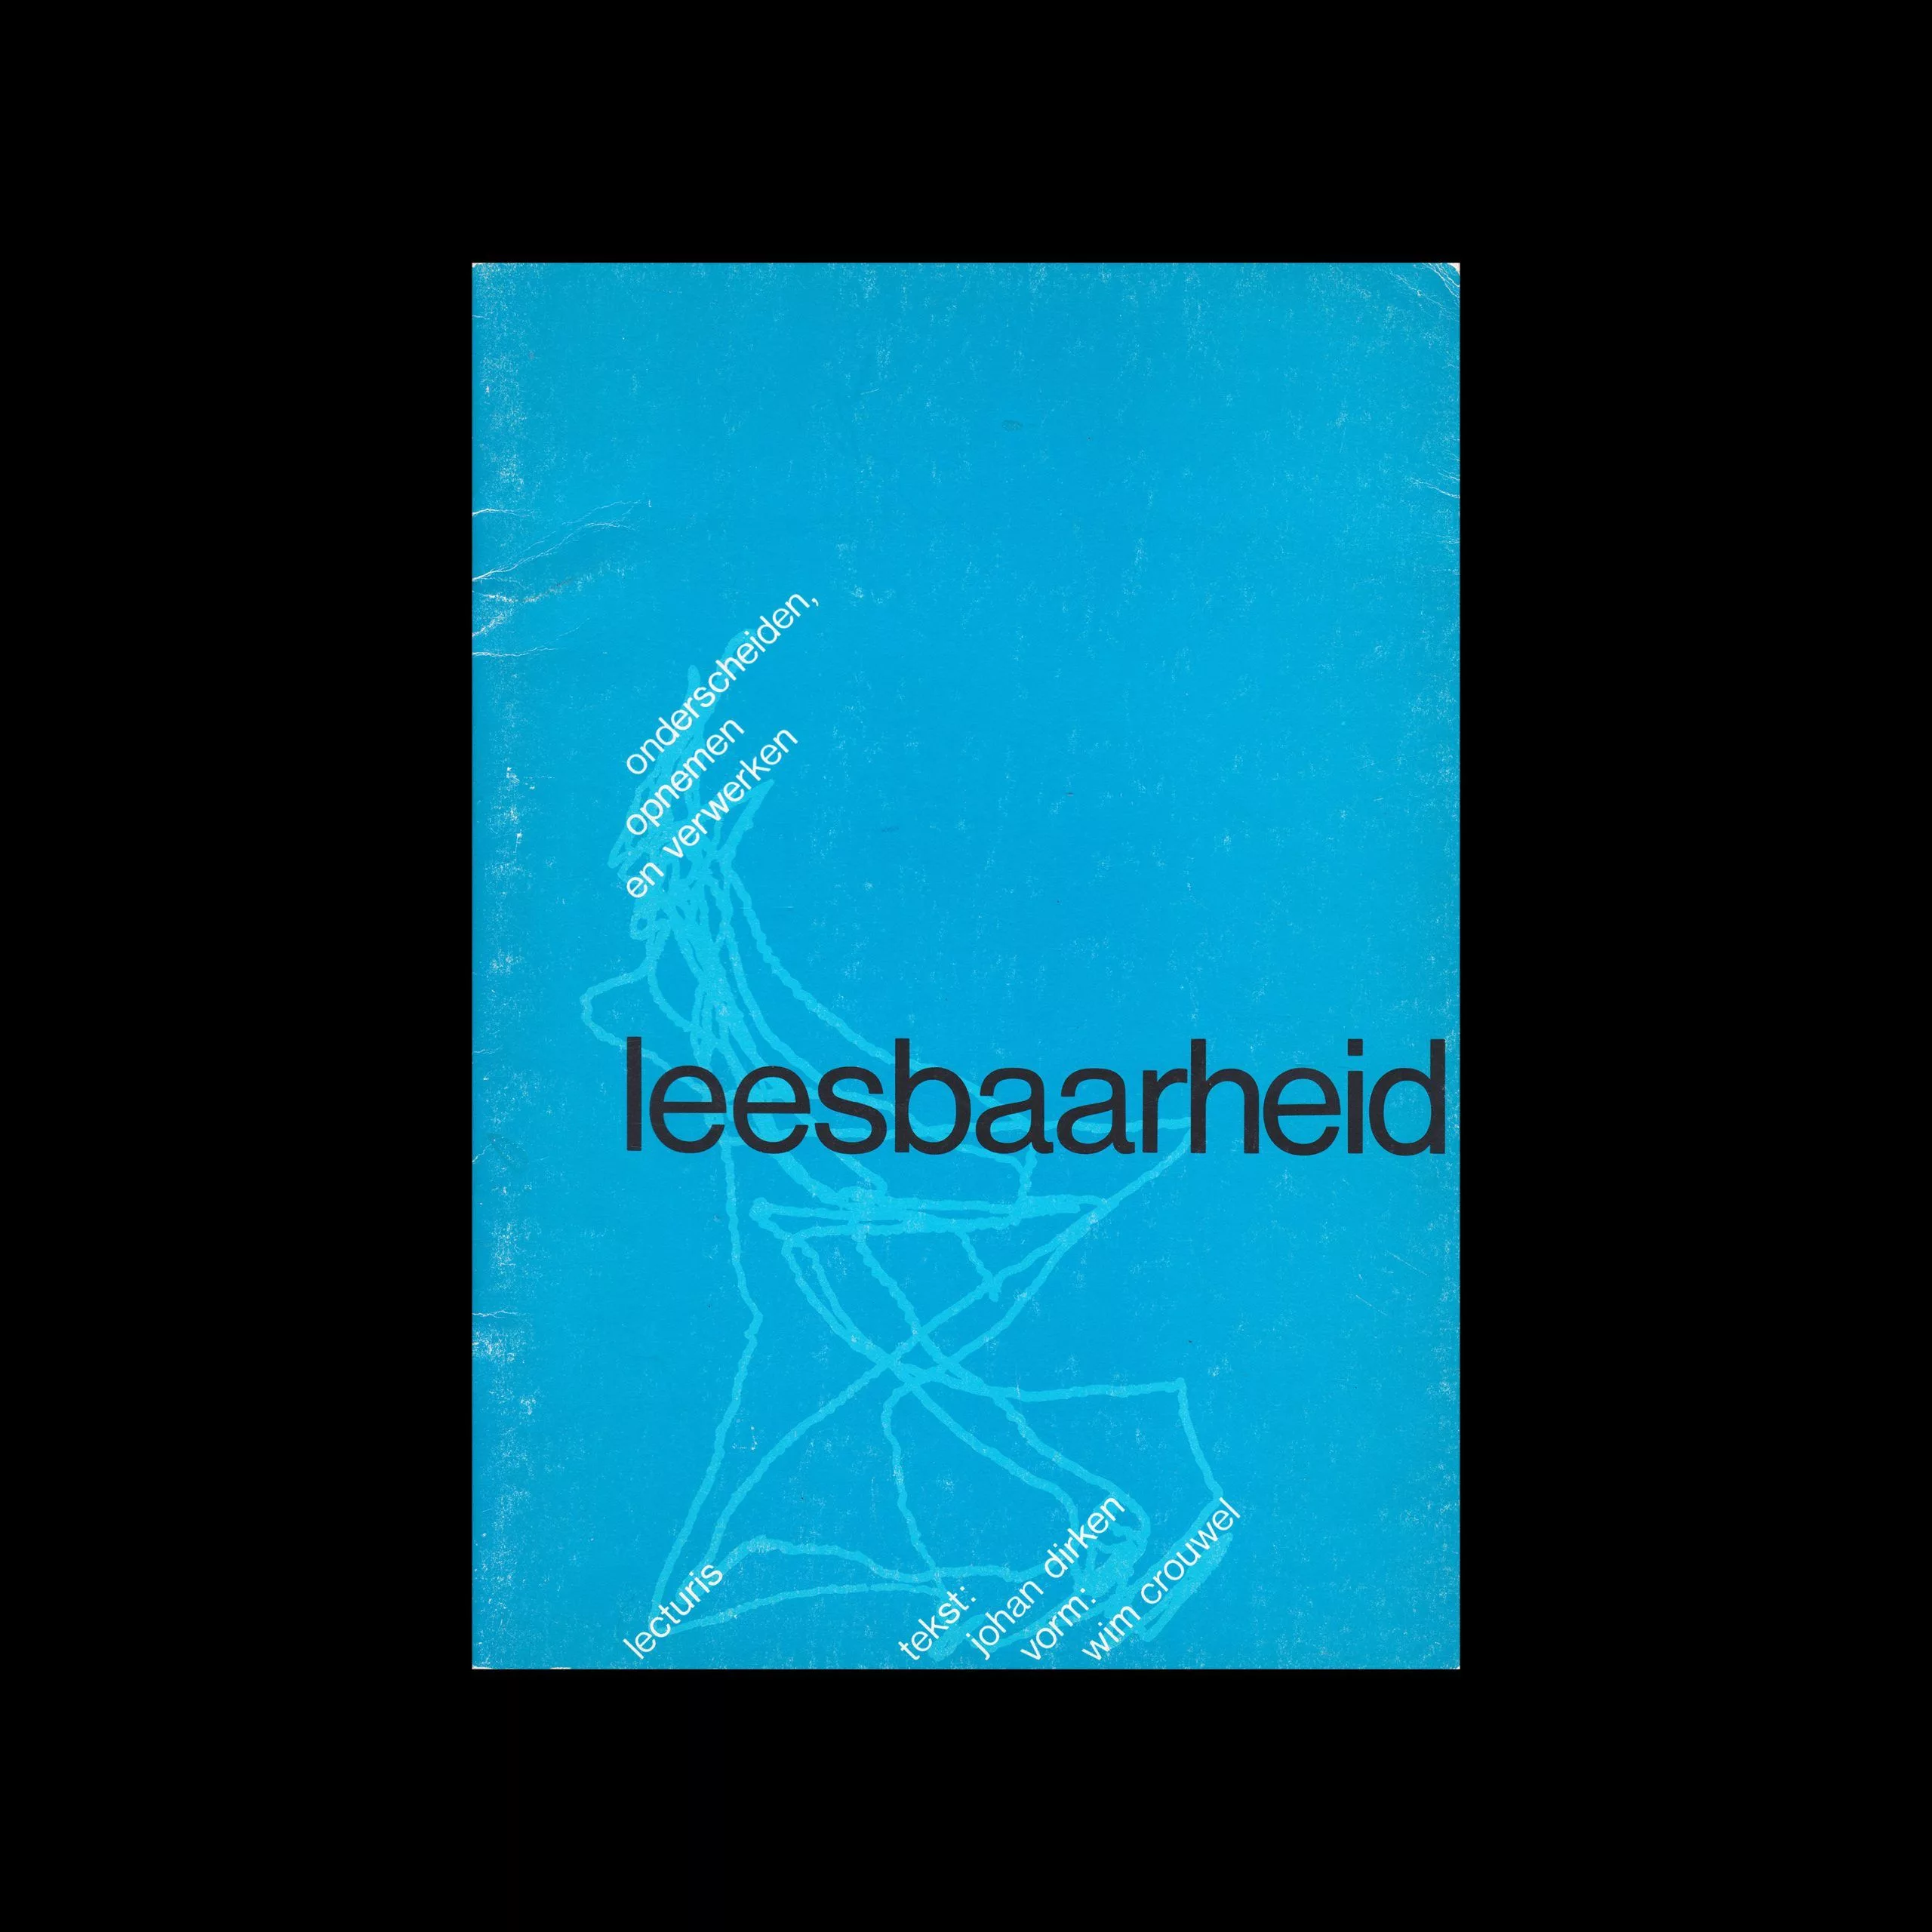 Leesbaarheid : onderscheiden, opnemen en verwerken, Lecturis, 1976 designed by Wim Crouwel